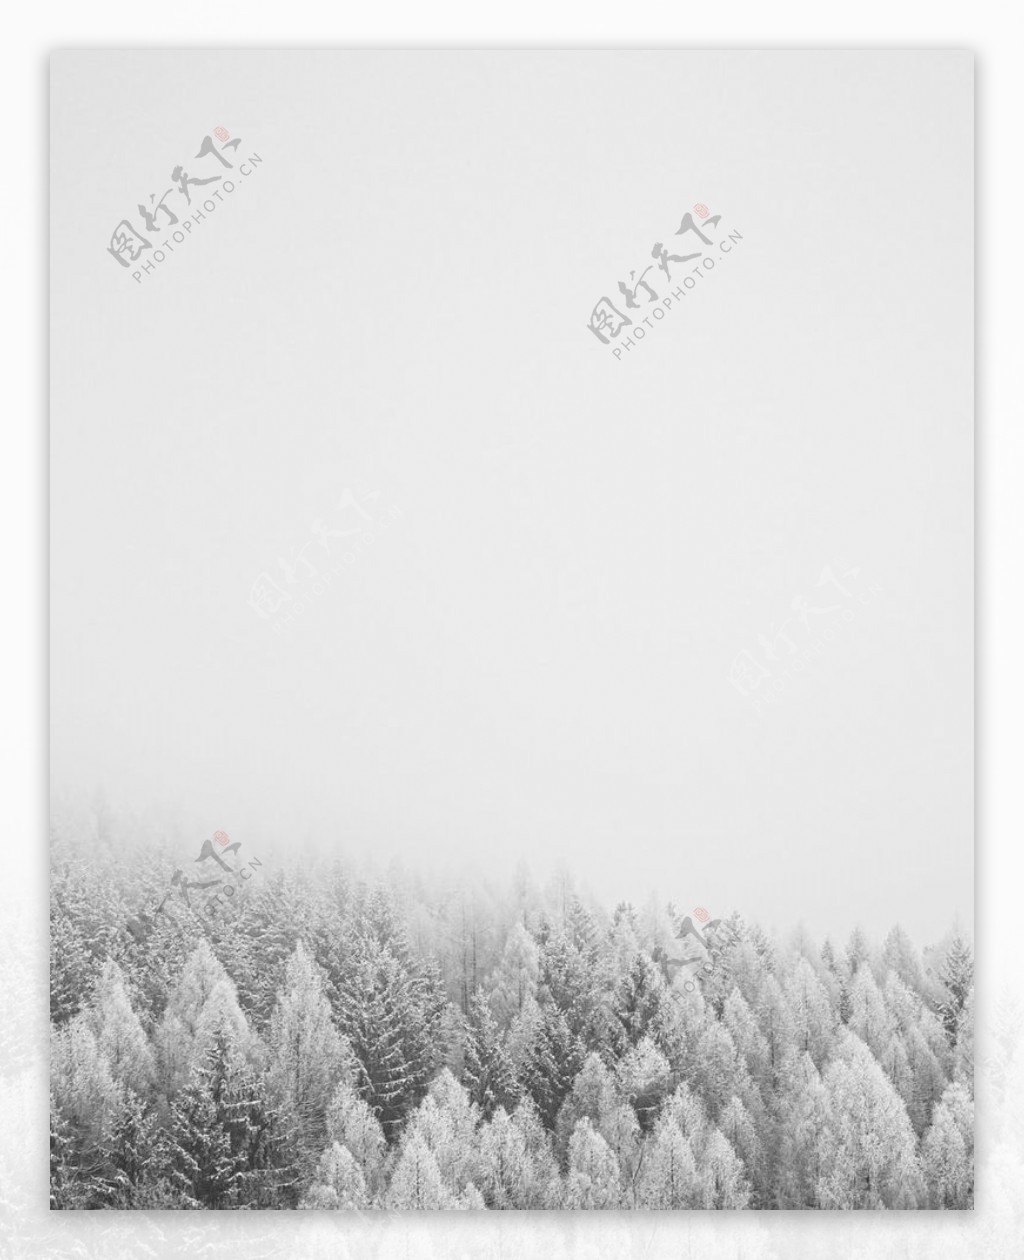 雪树林图片